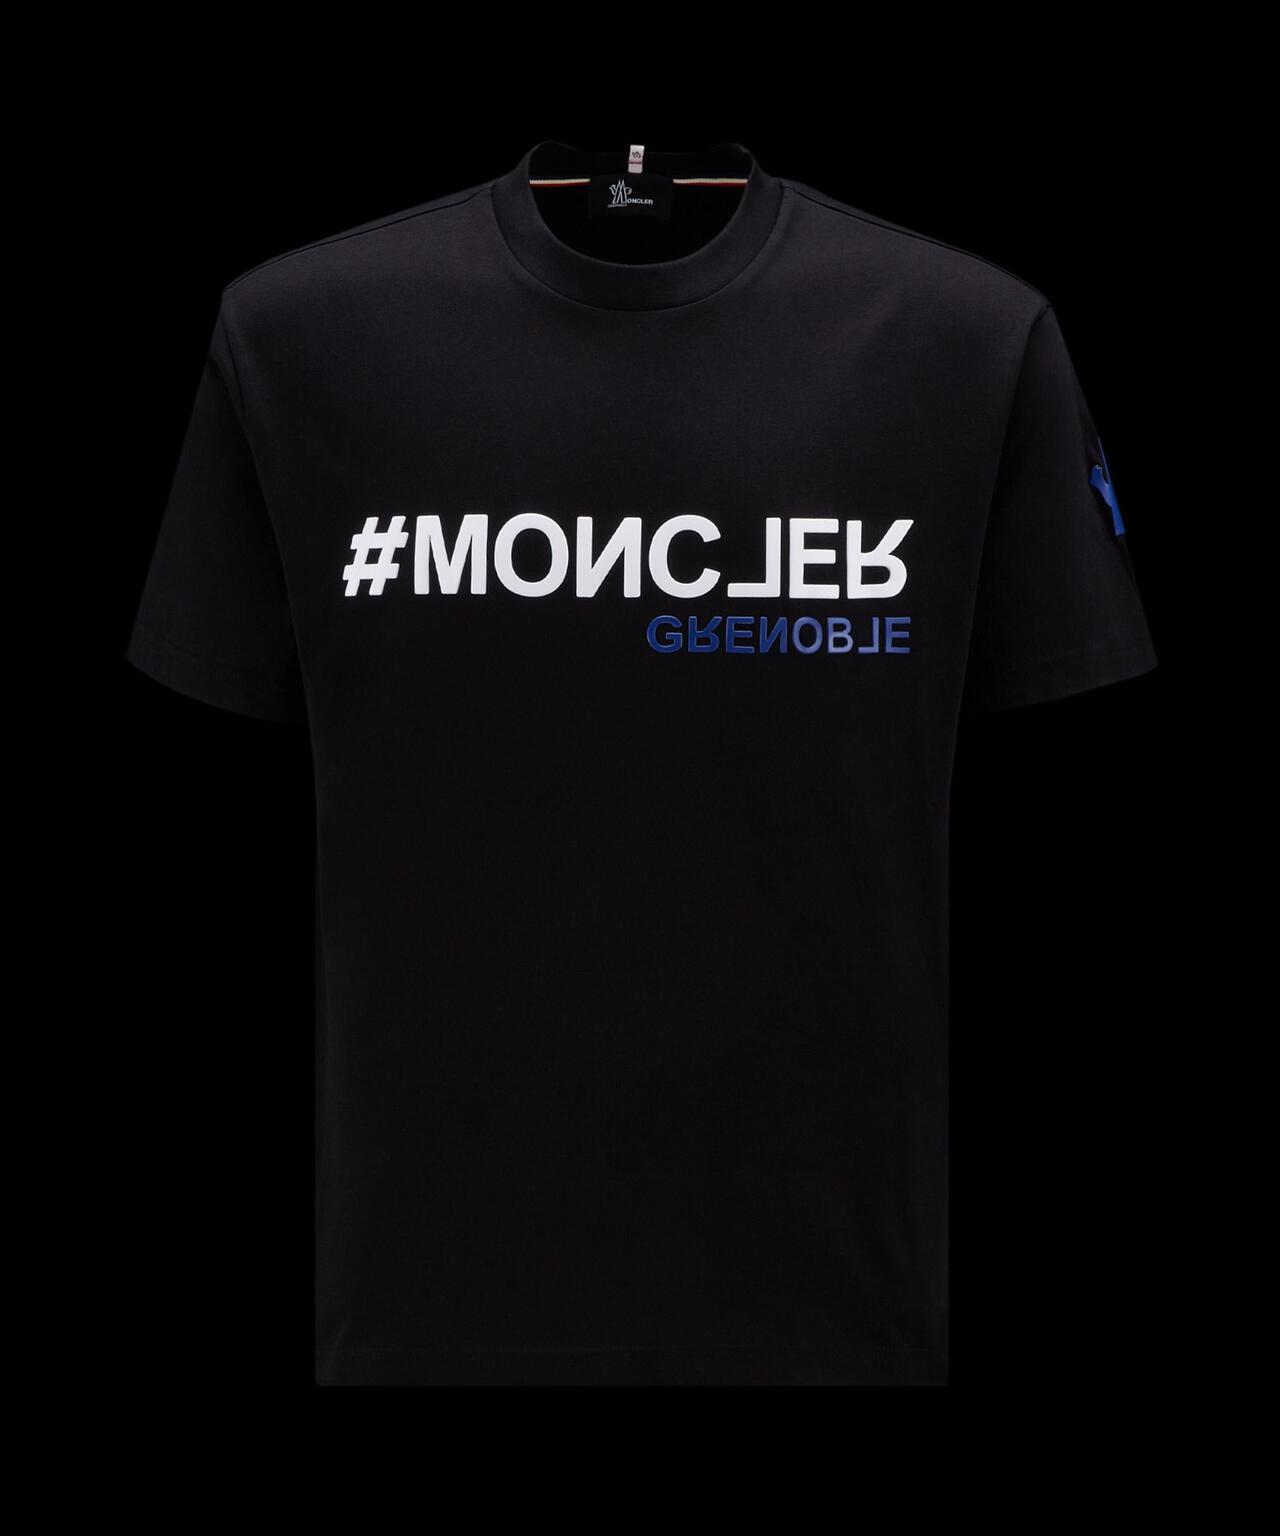 多少の誤差はご了承ください訳あり Mサイズ MONCLER モンクレール Grenoble ロゴTシャツ